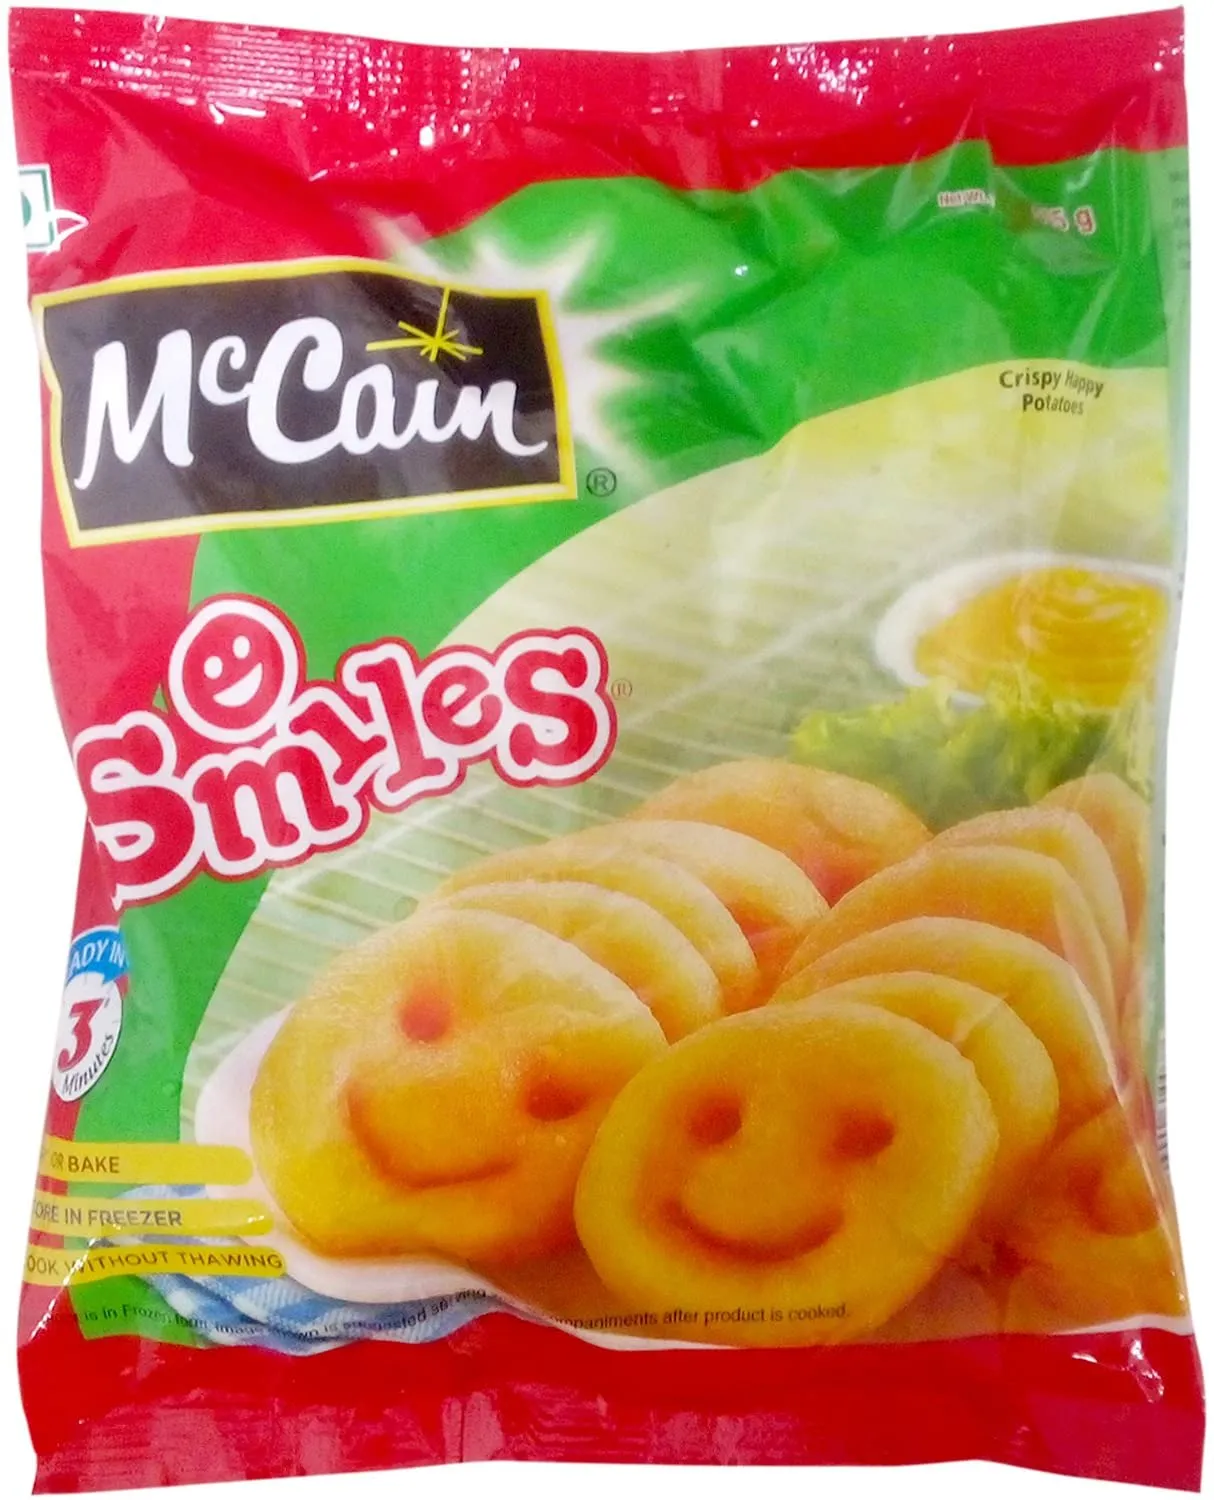 MC CAIN SMILES 415G